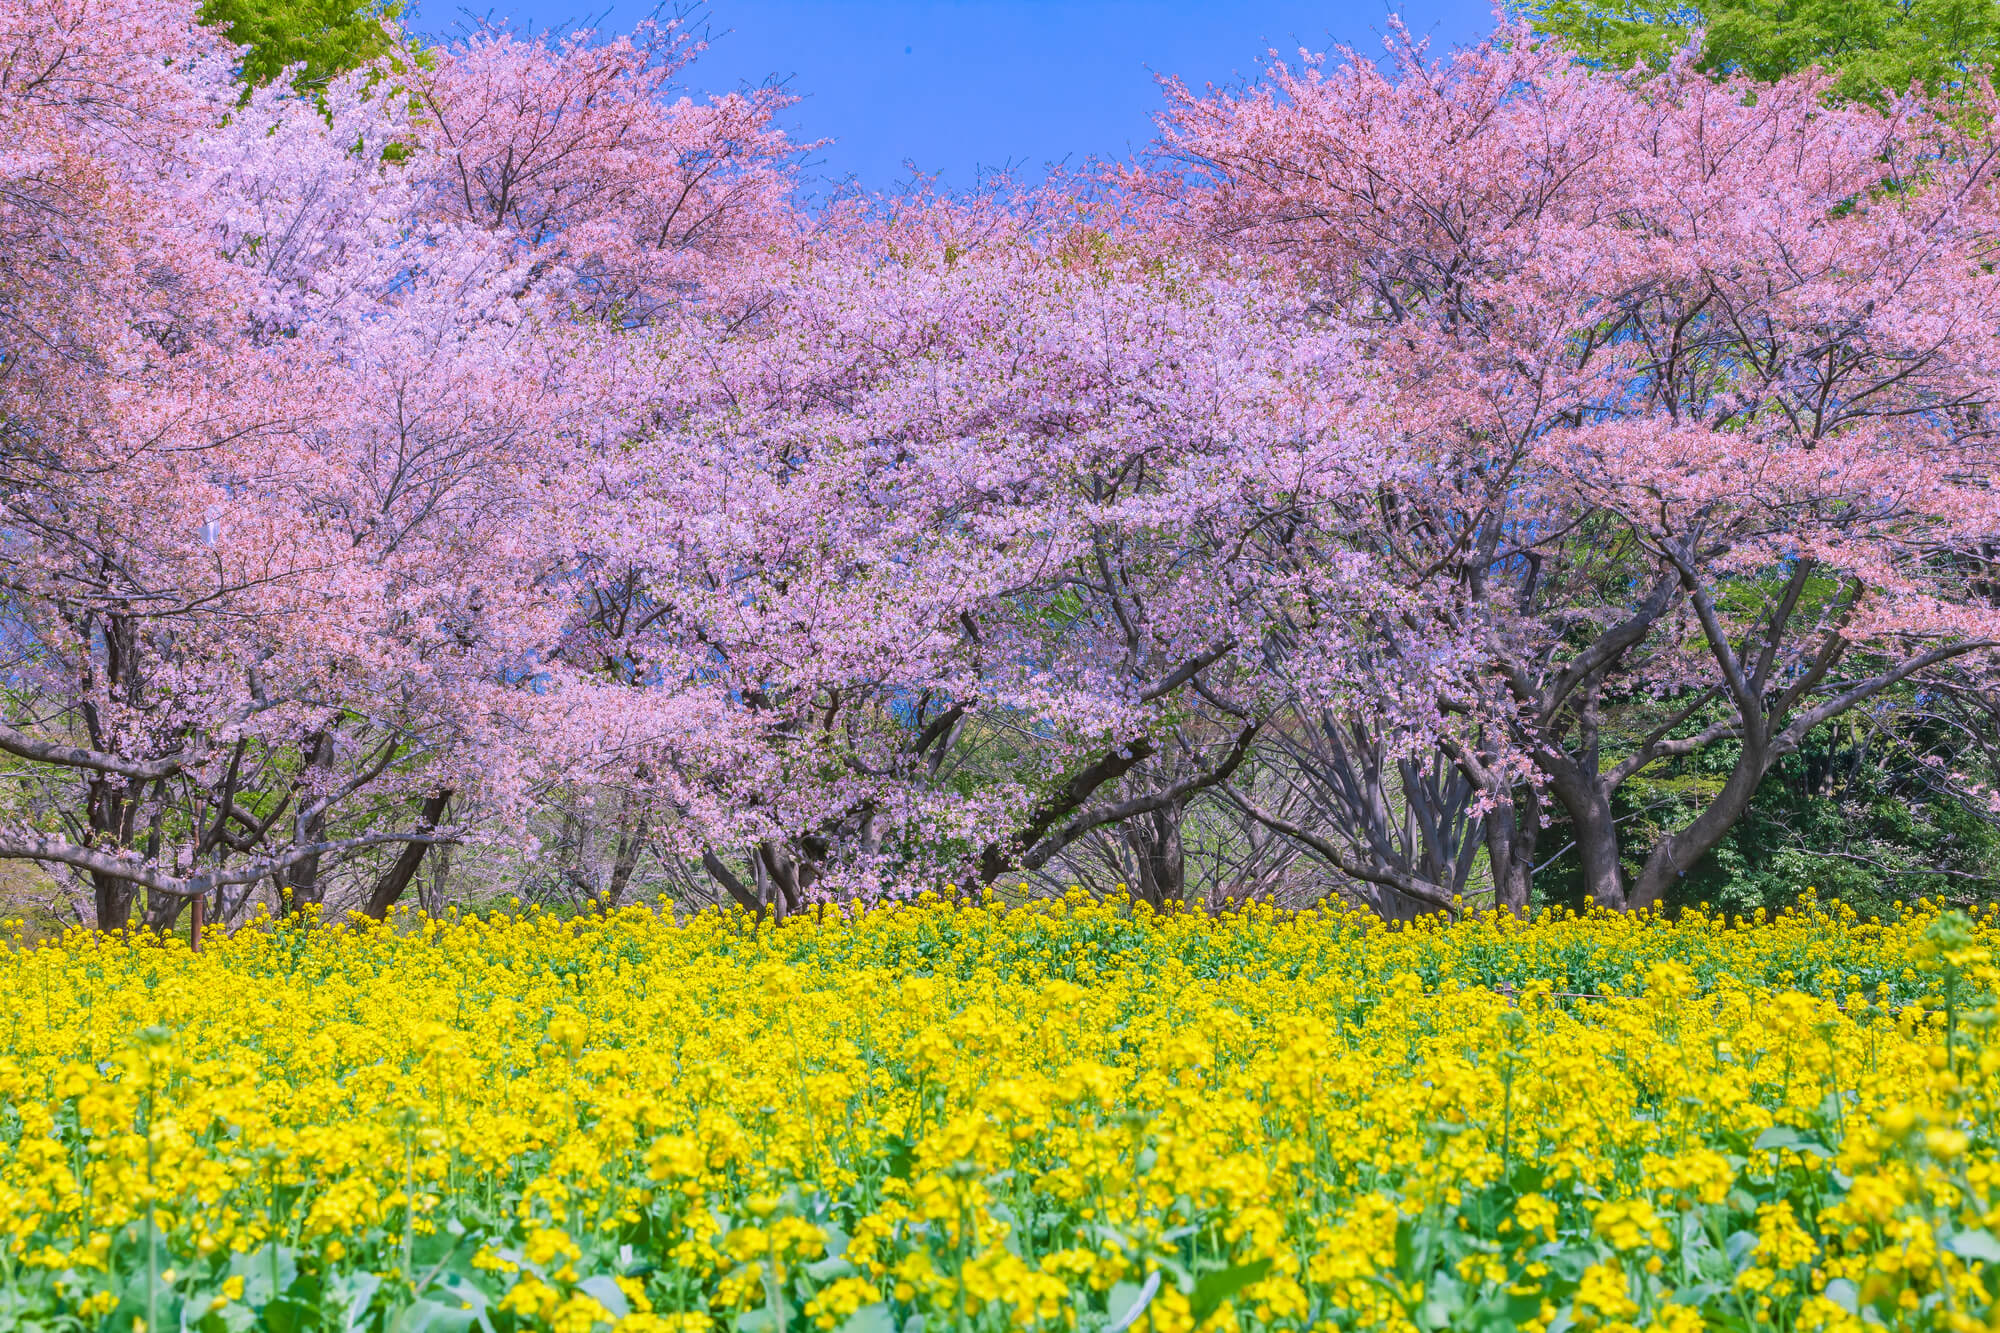 昭和記念公園の桜と菜の花の風景